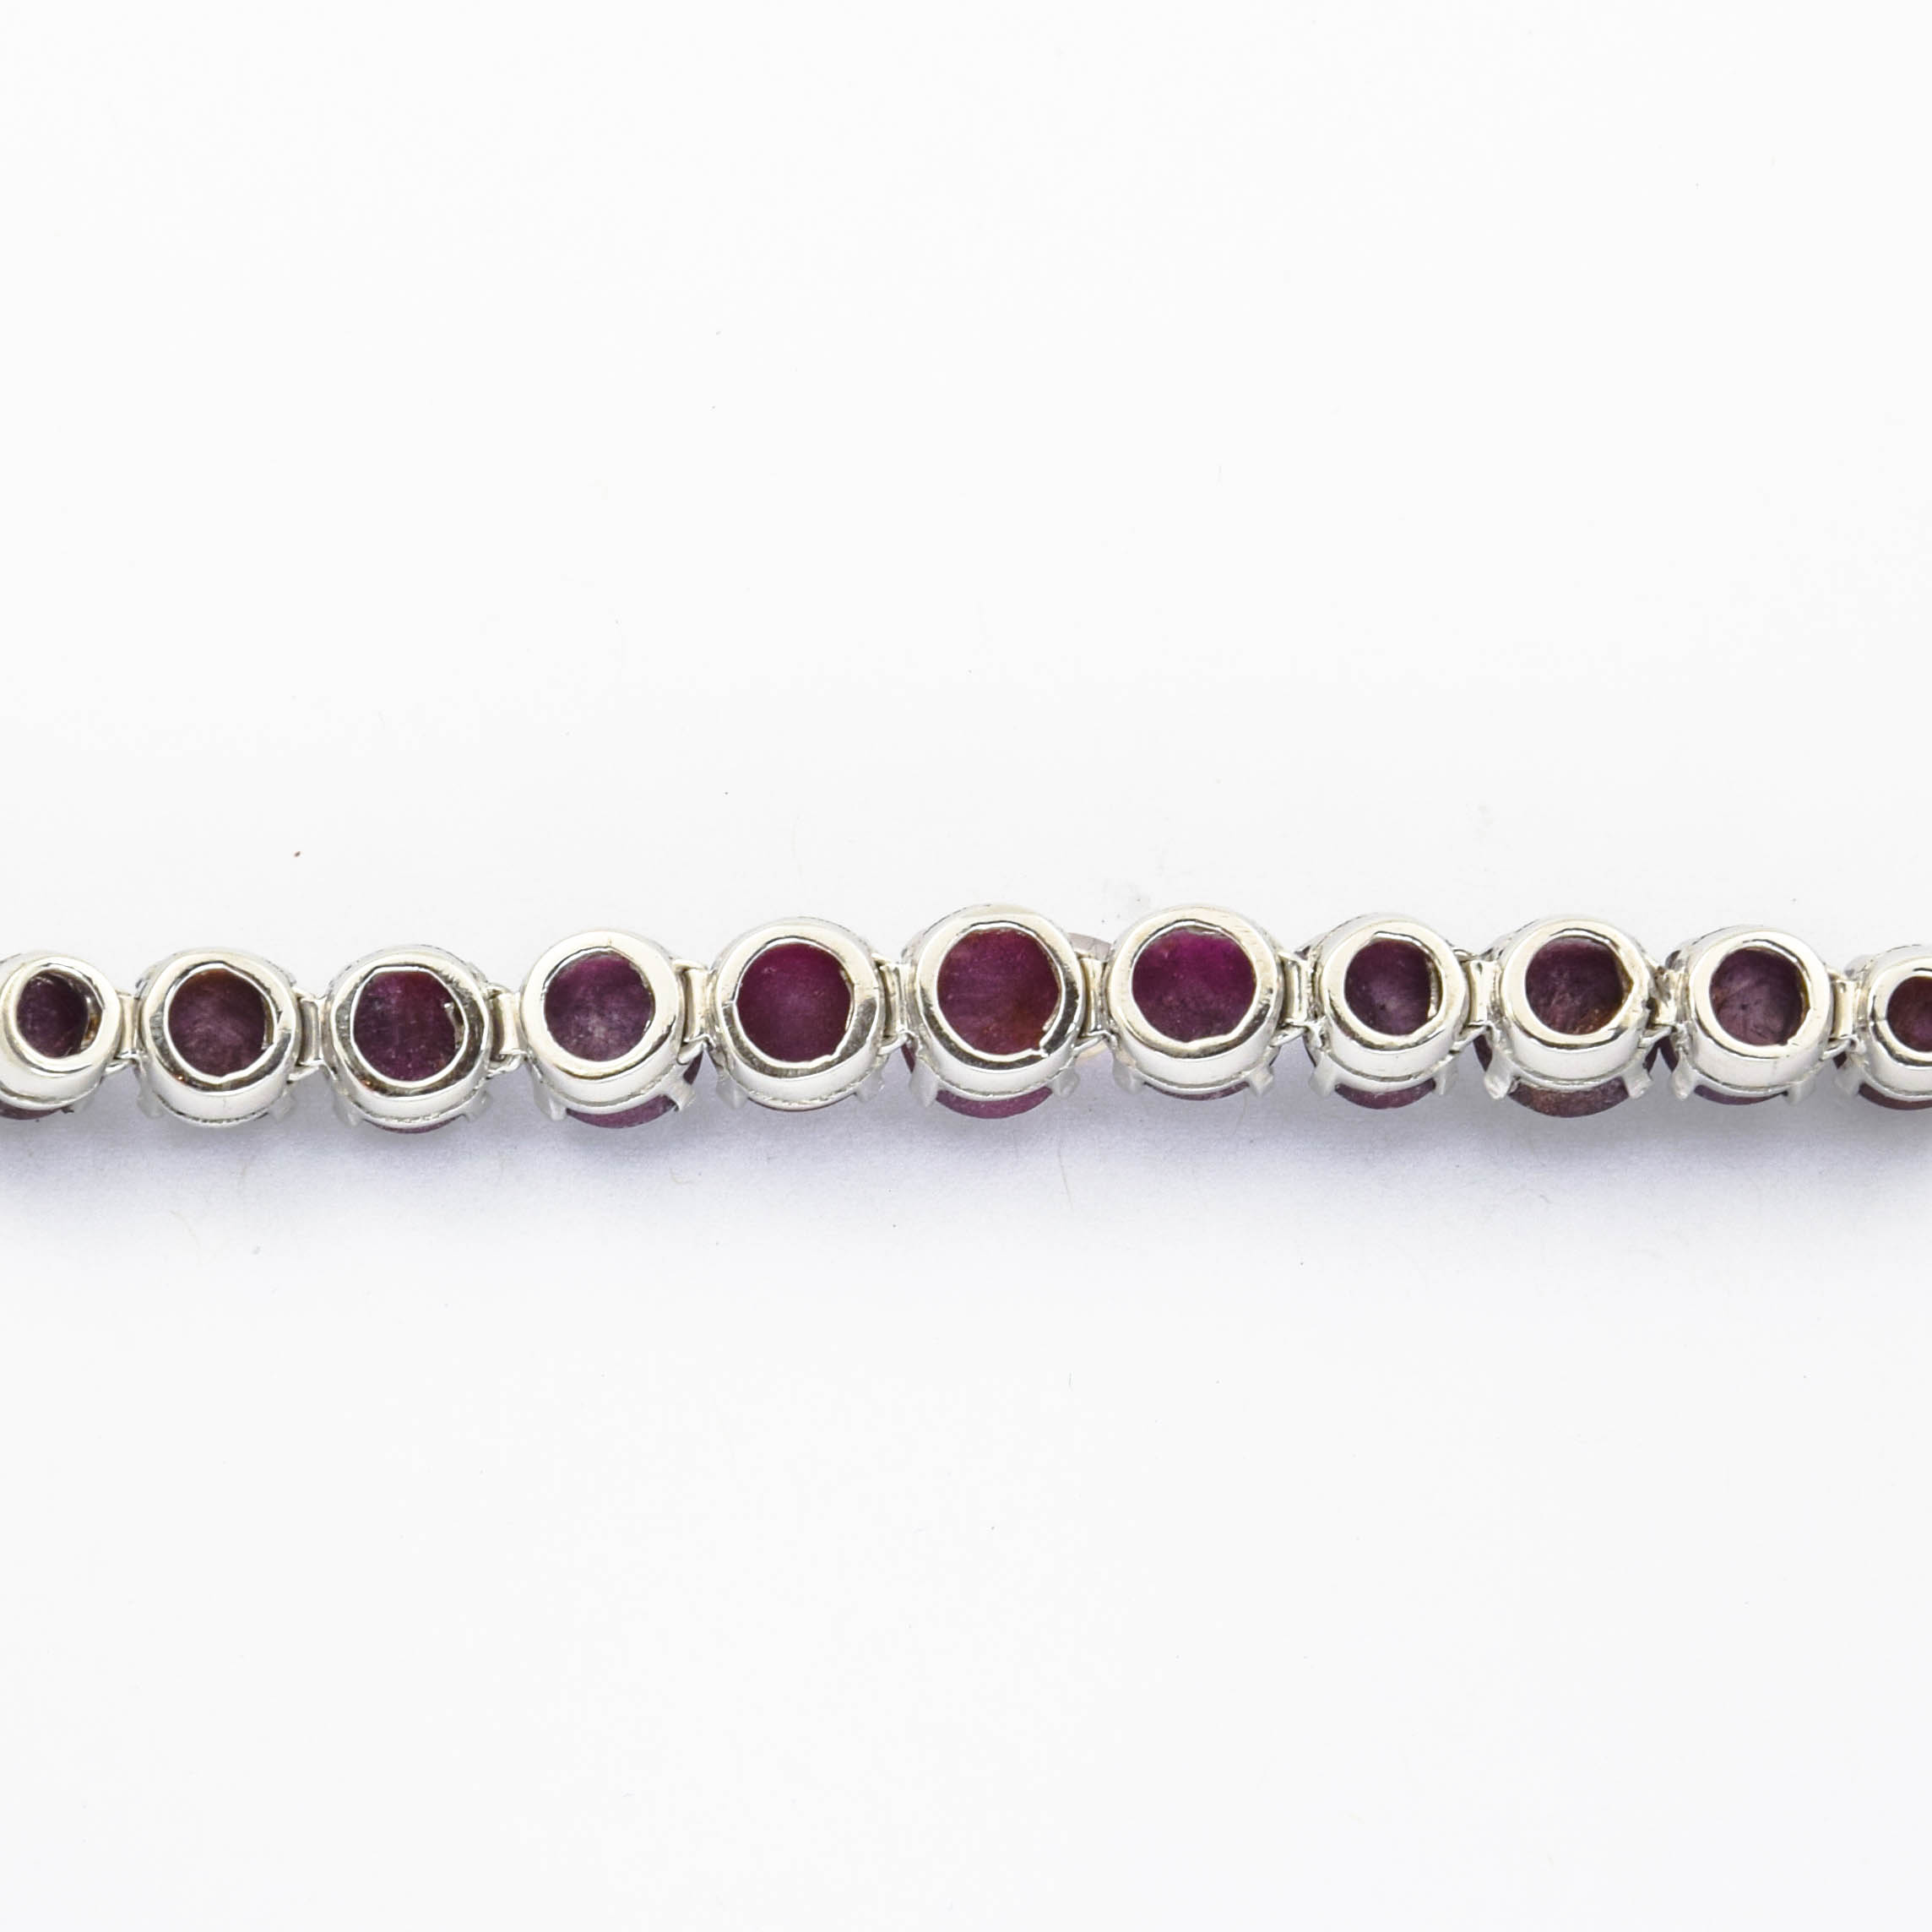 Rubinarmband aus 925 Silber, nachhaltiger second hand Schmuck perfekt aufgearbeitet